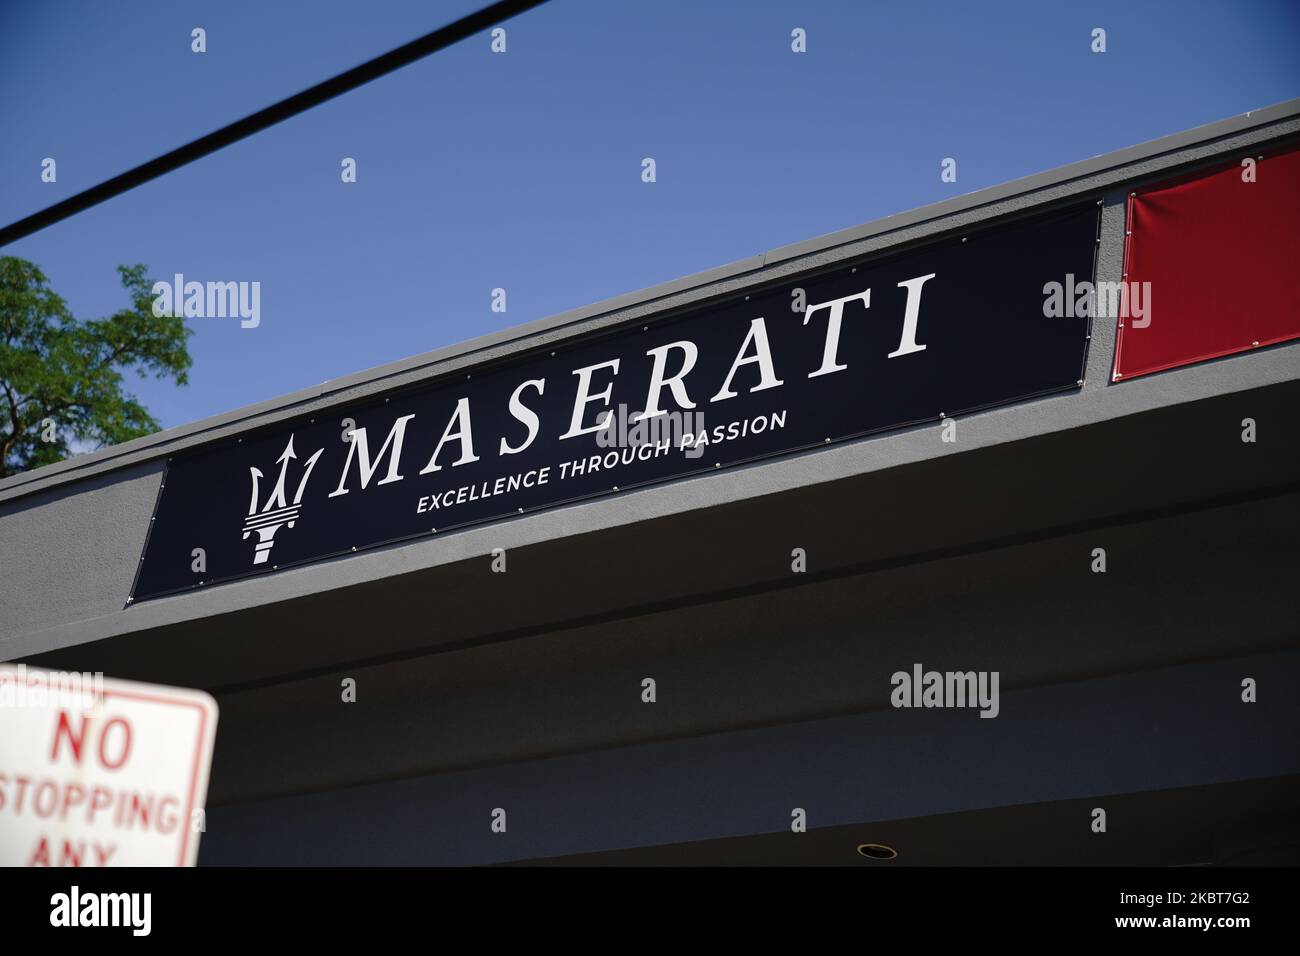 Una visione della concessionaria Maserati a Queens, New York, USA., il 4 luglio 2020. (Foto di John Nacion/NurPhoto) Foto Stock